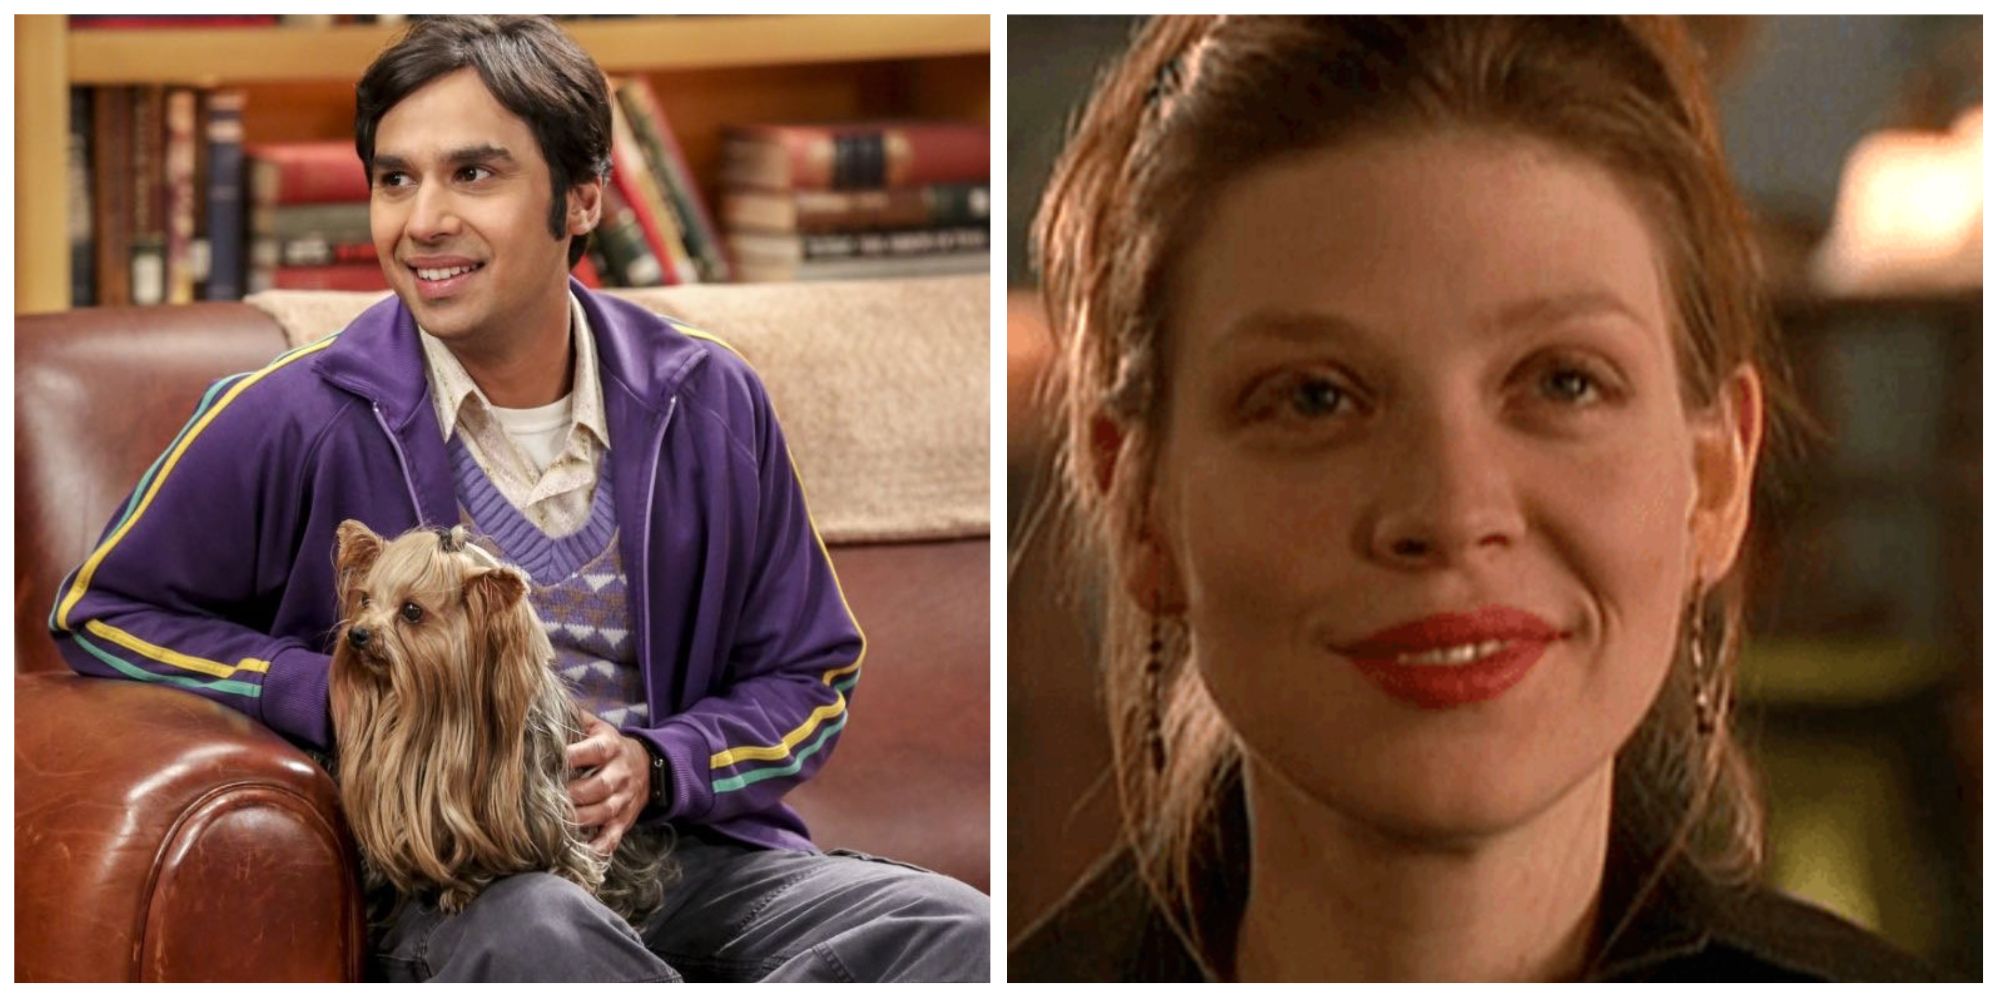 Left: Raj from Big Bang Theory image. Right: Tara from Buffy image.